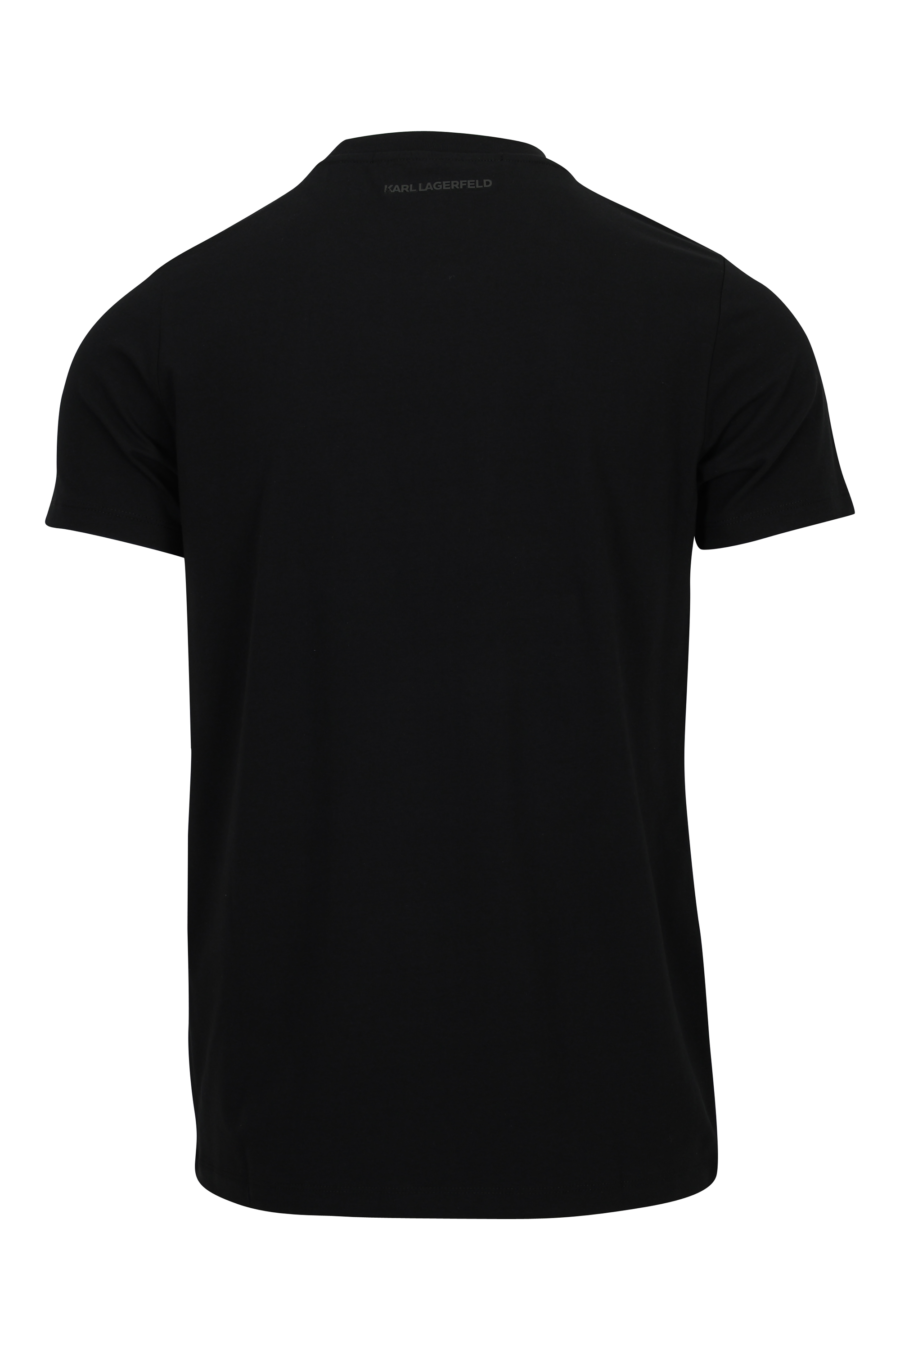 Camiseta negra con maxilogo en degradé - 4062226958028 1